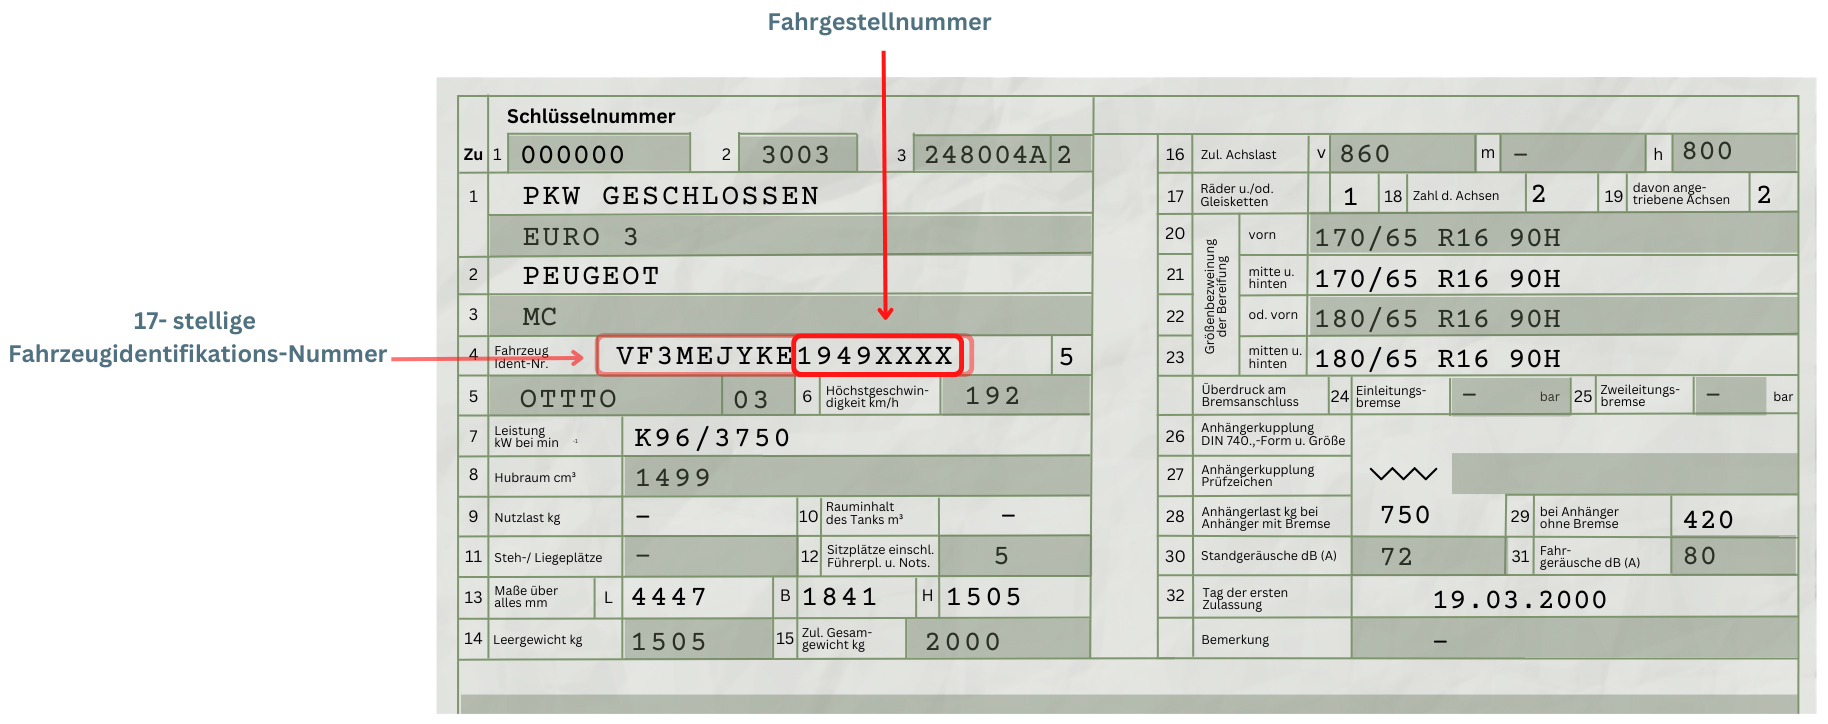 Bild vom alten Fahrzeugschein mit Hervorhebung der Fahrzeugidentifikationsnummer und Fahrgestellnummer